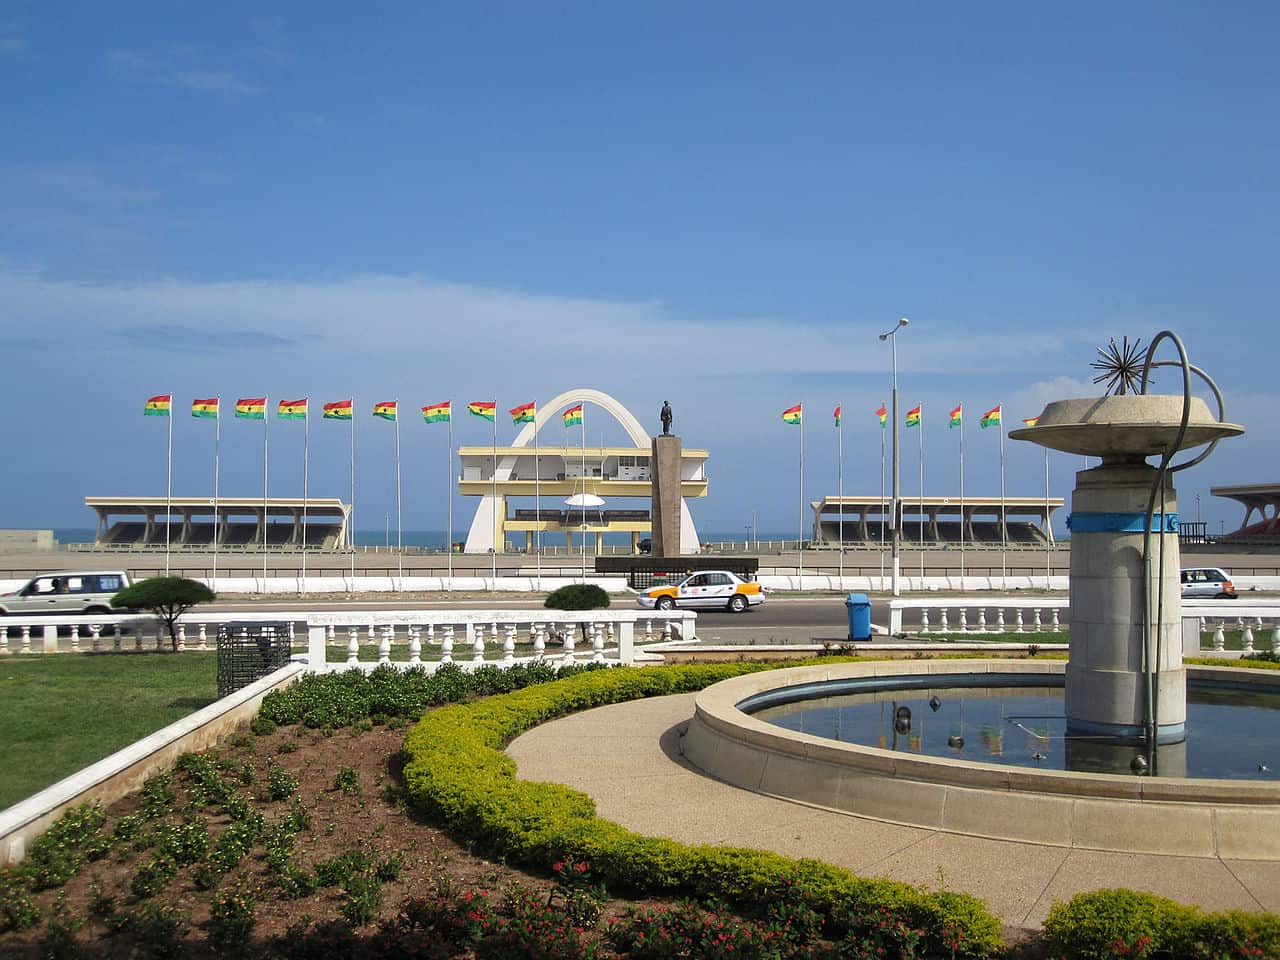 National monument of Ghana - Black Star Square